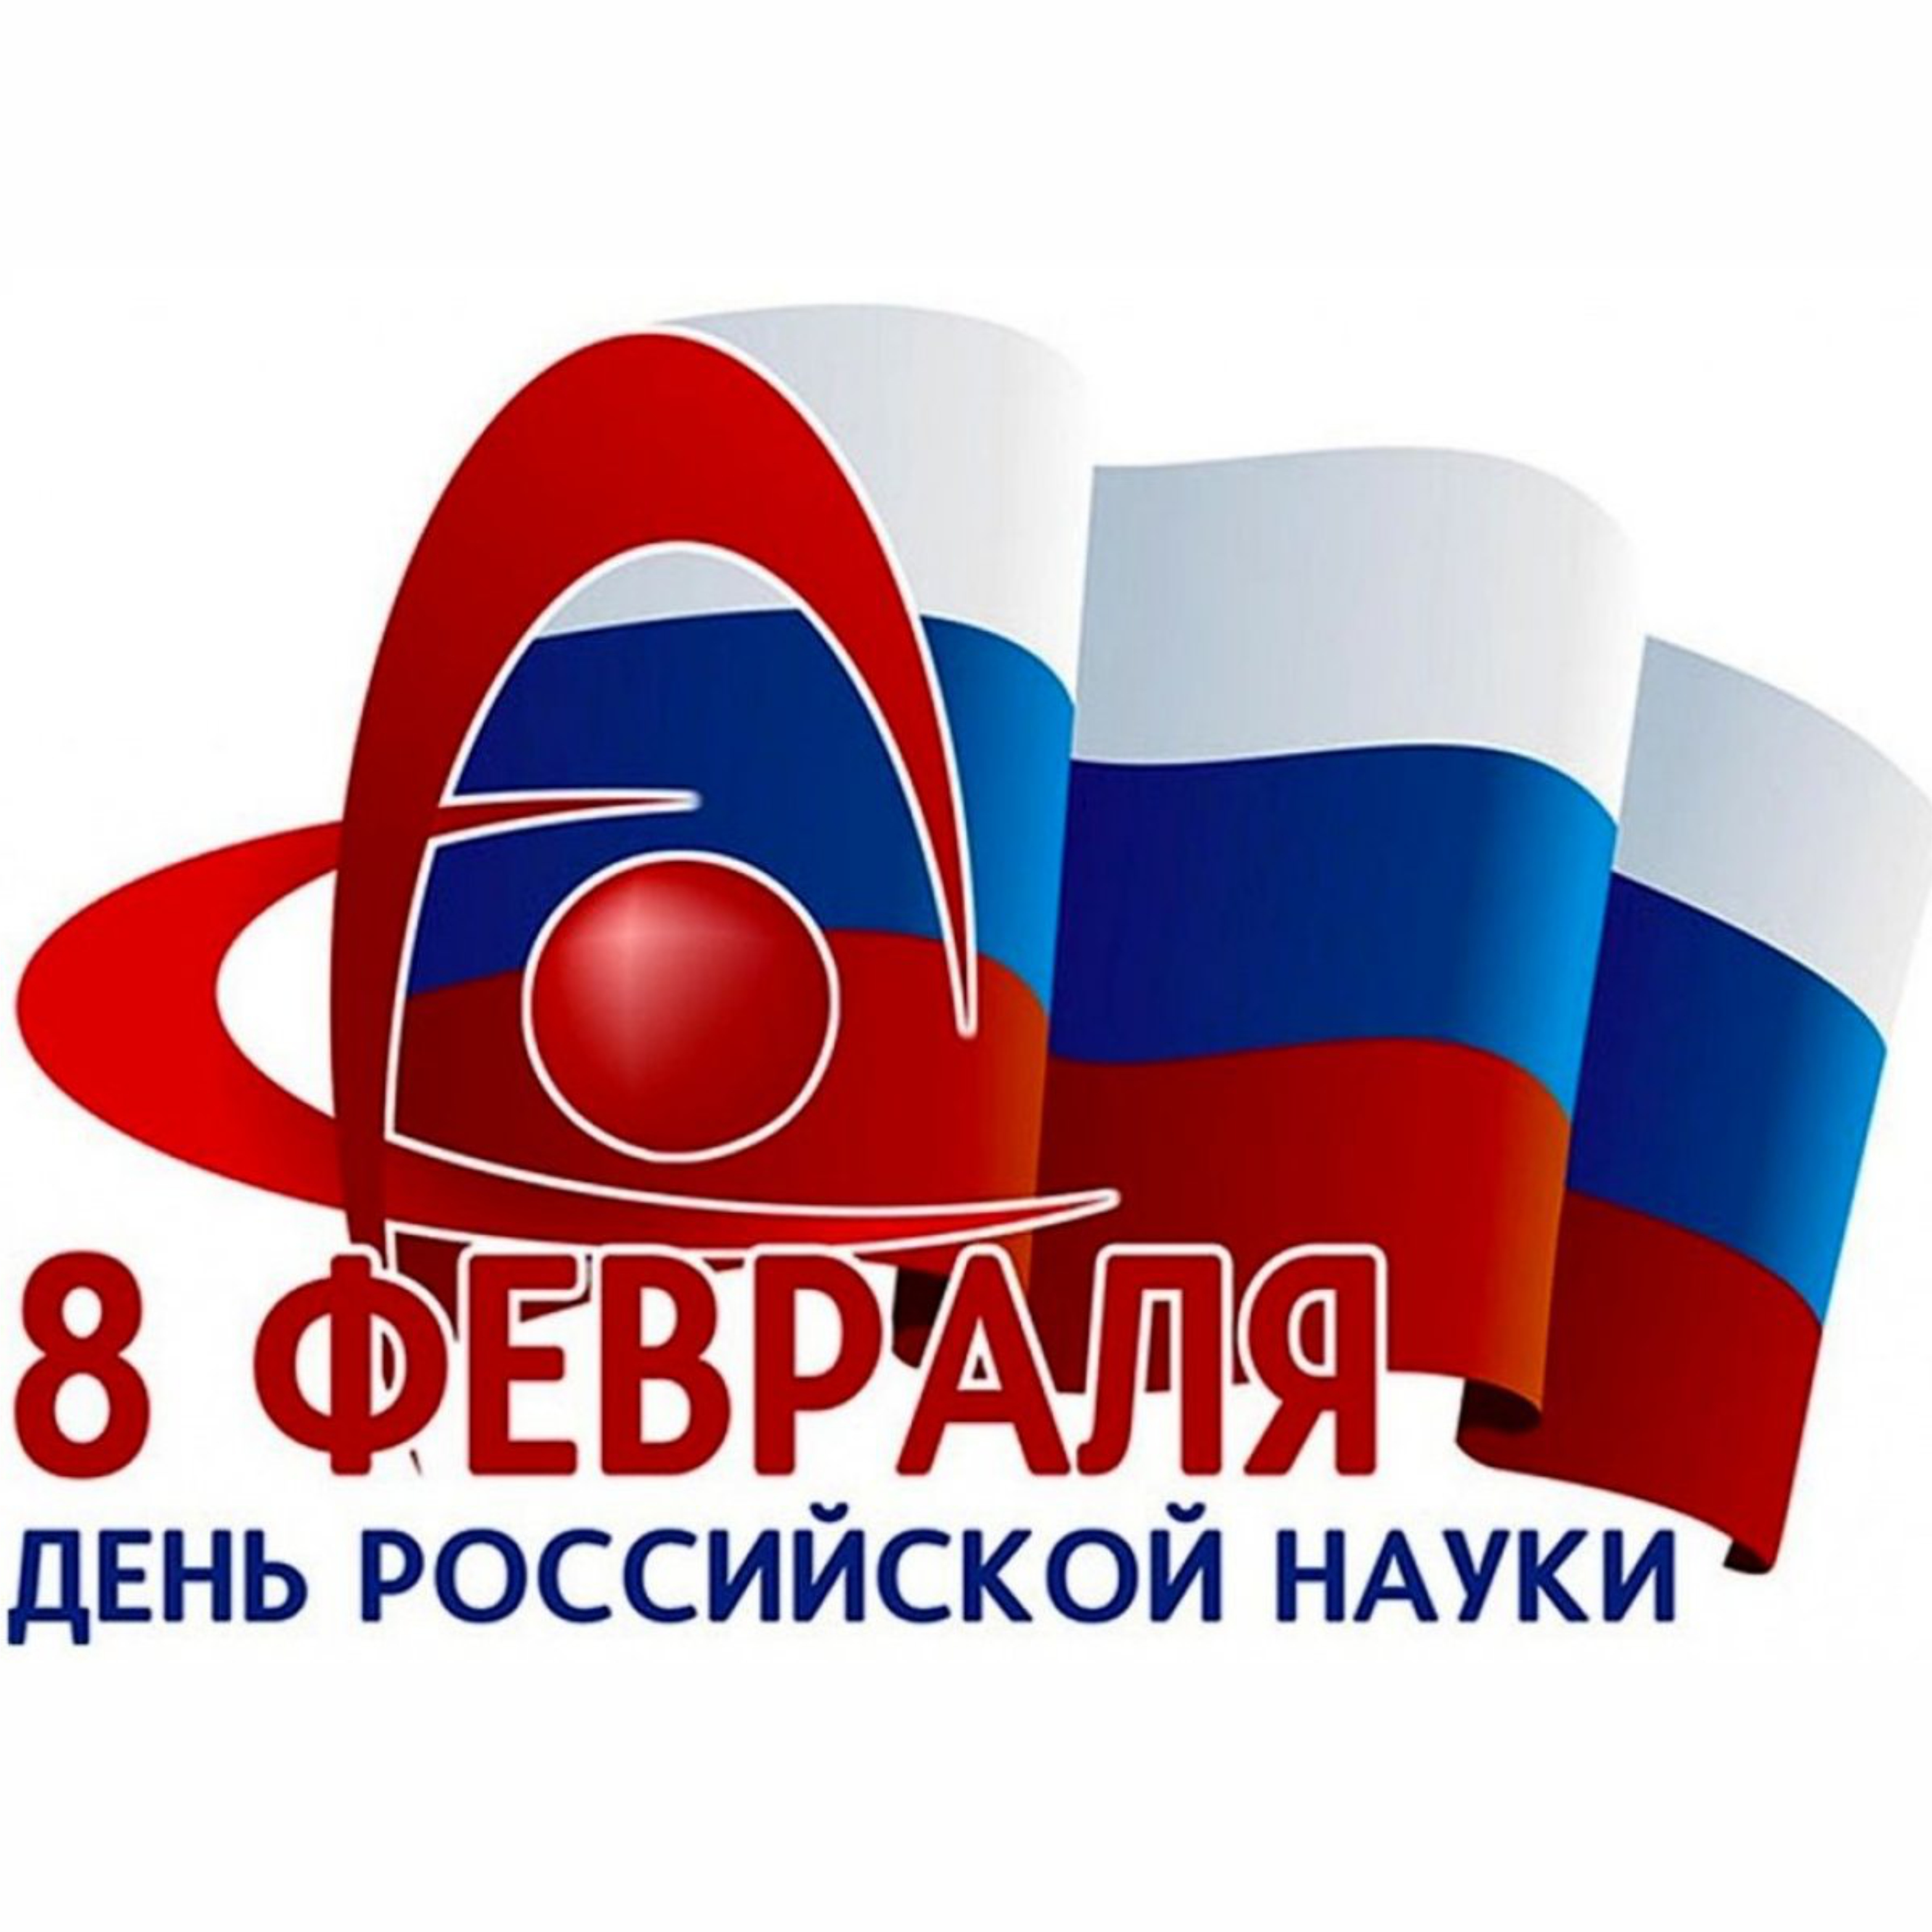 Награды ко Дню российской науки